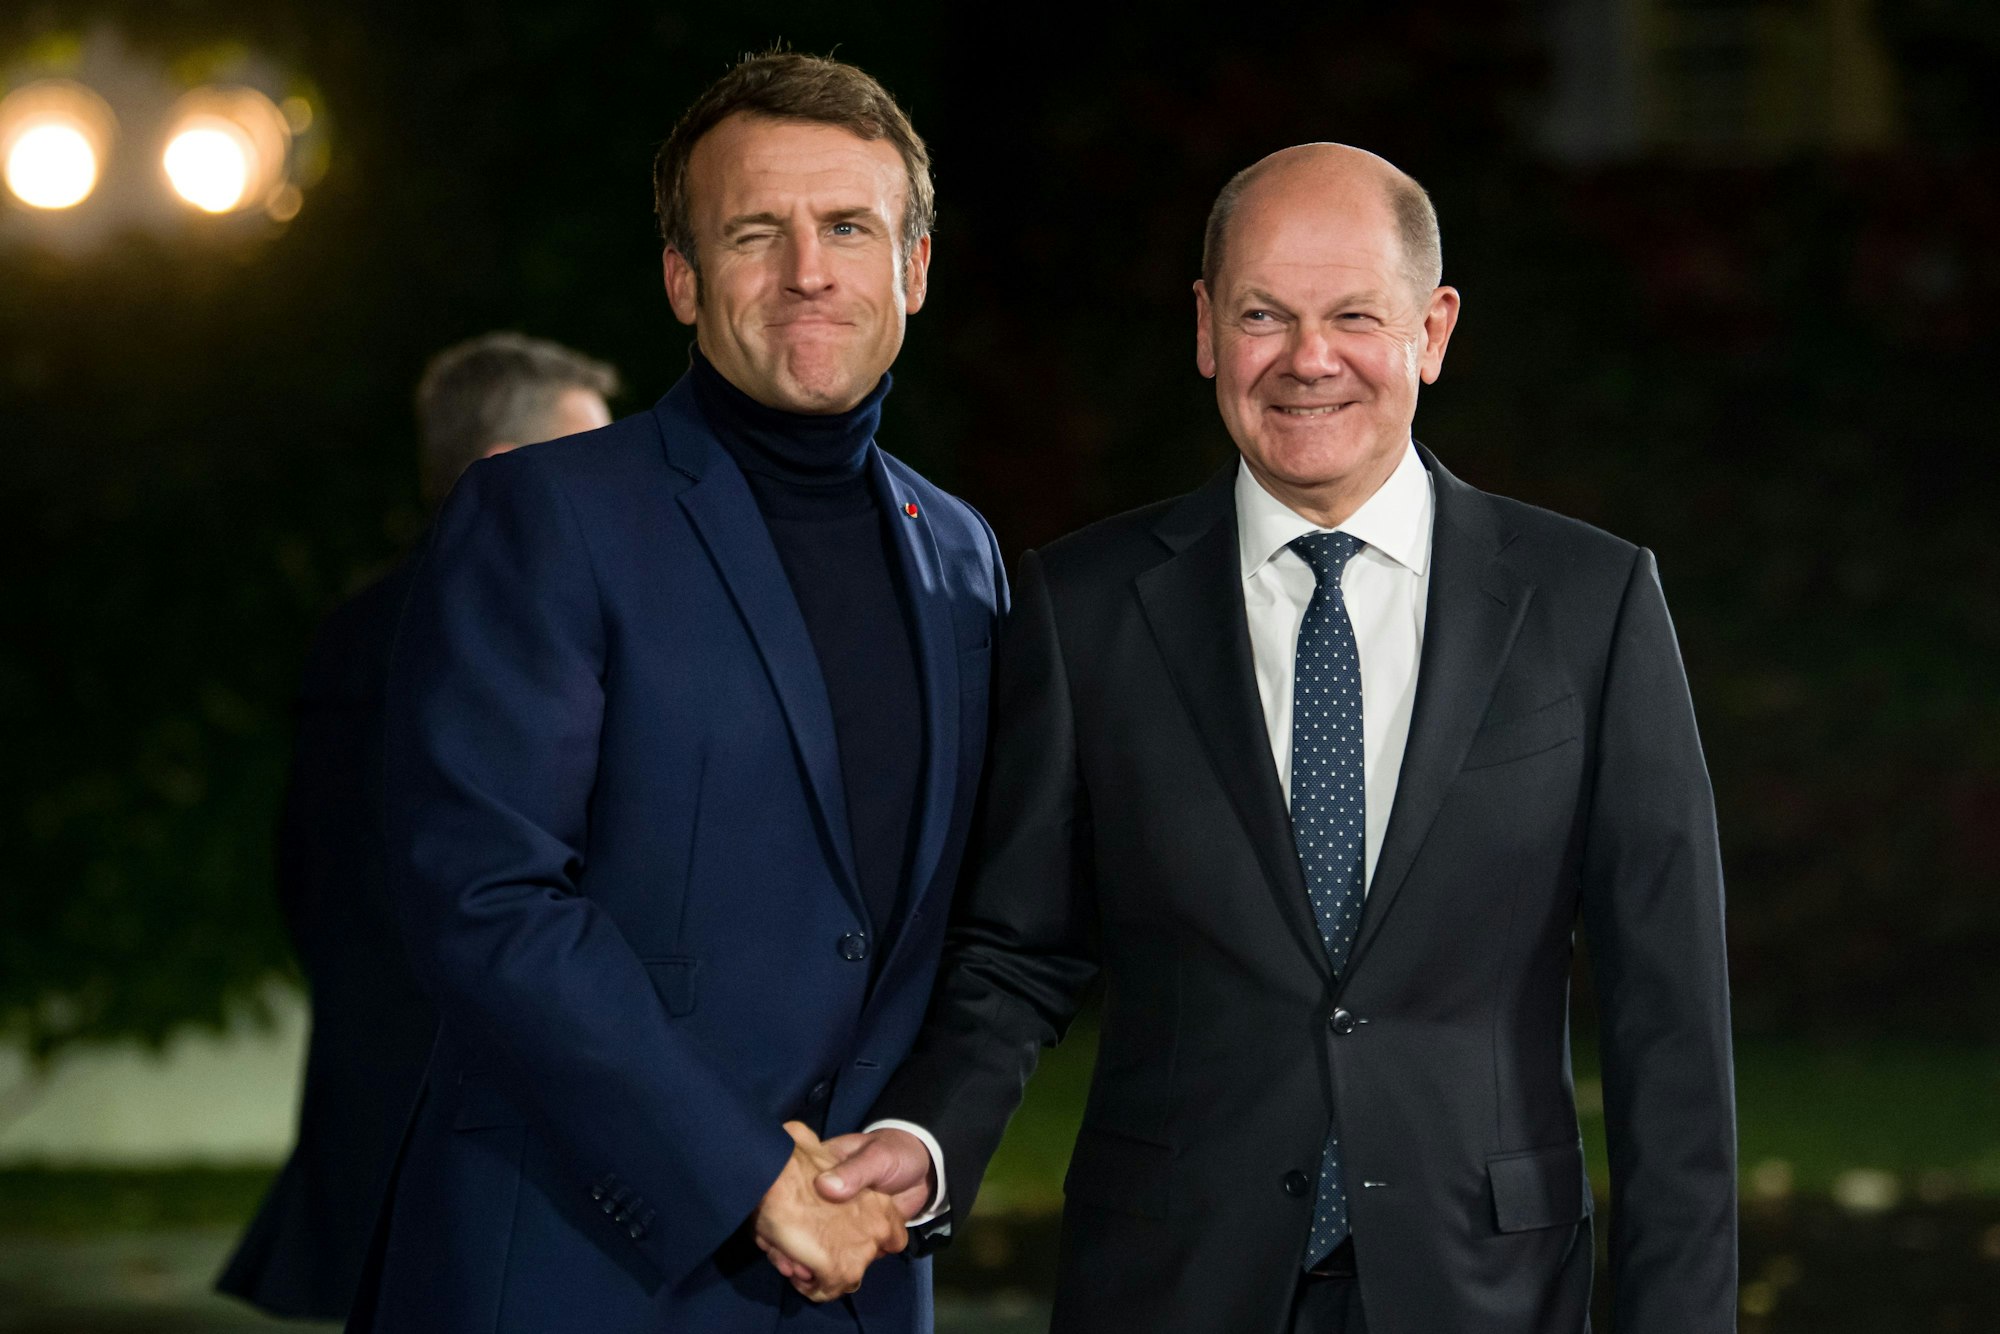 Bundeskanzler Olaf Scholz (SPD, r) empfängt Emmanuel Macron, Präsident von Frankreich, zum Tag der Deutschen Einheit zu einem Abendessen im Bundeskanzleramt.